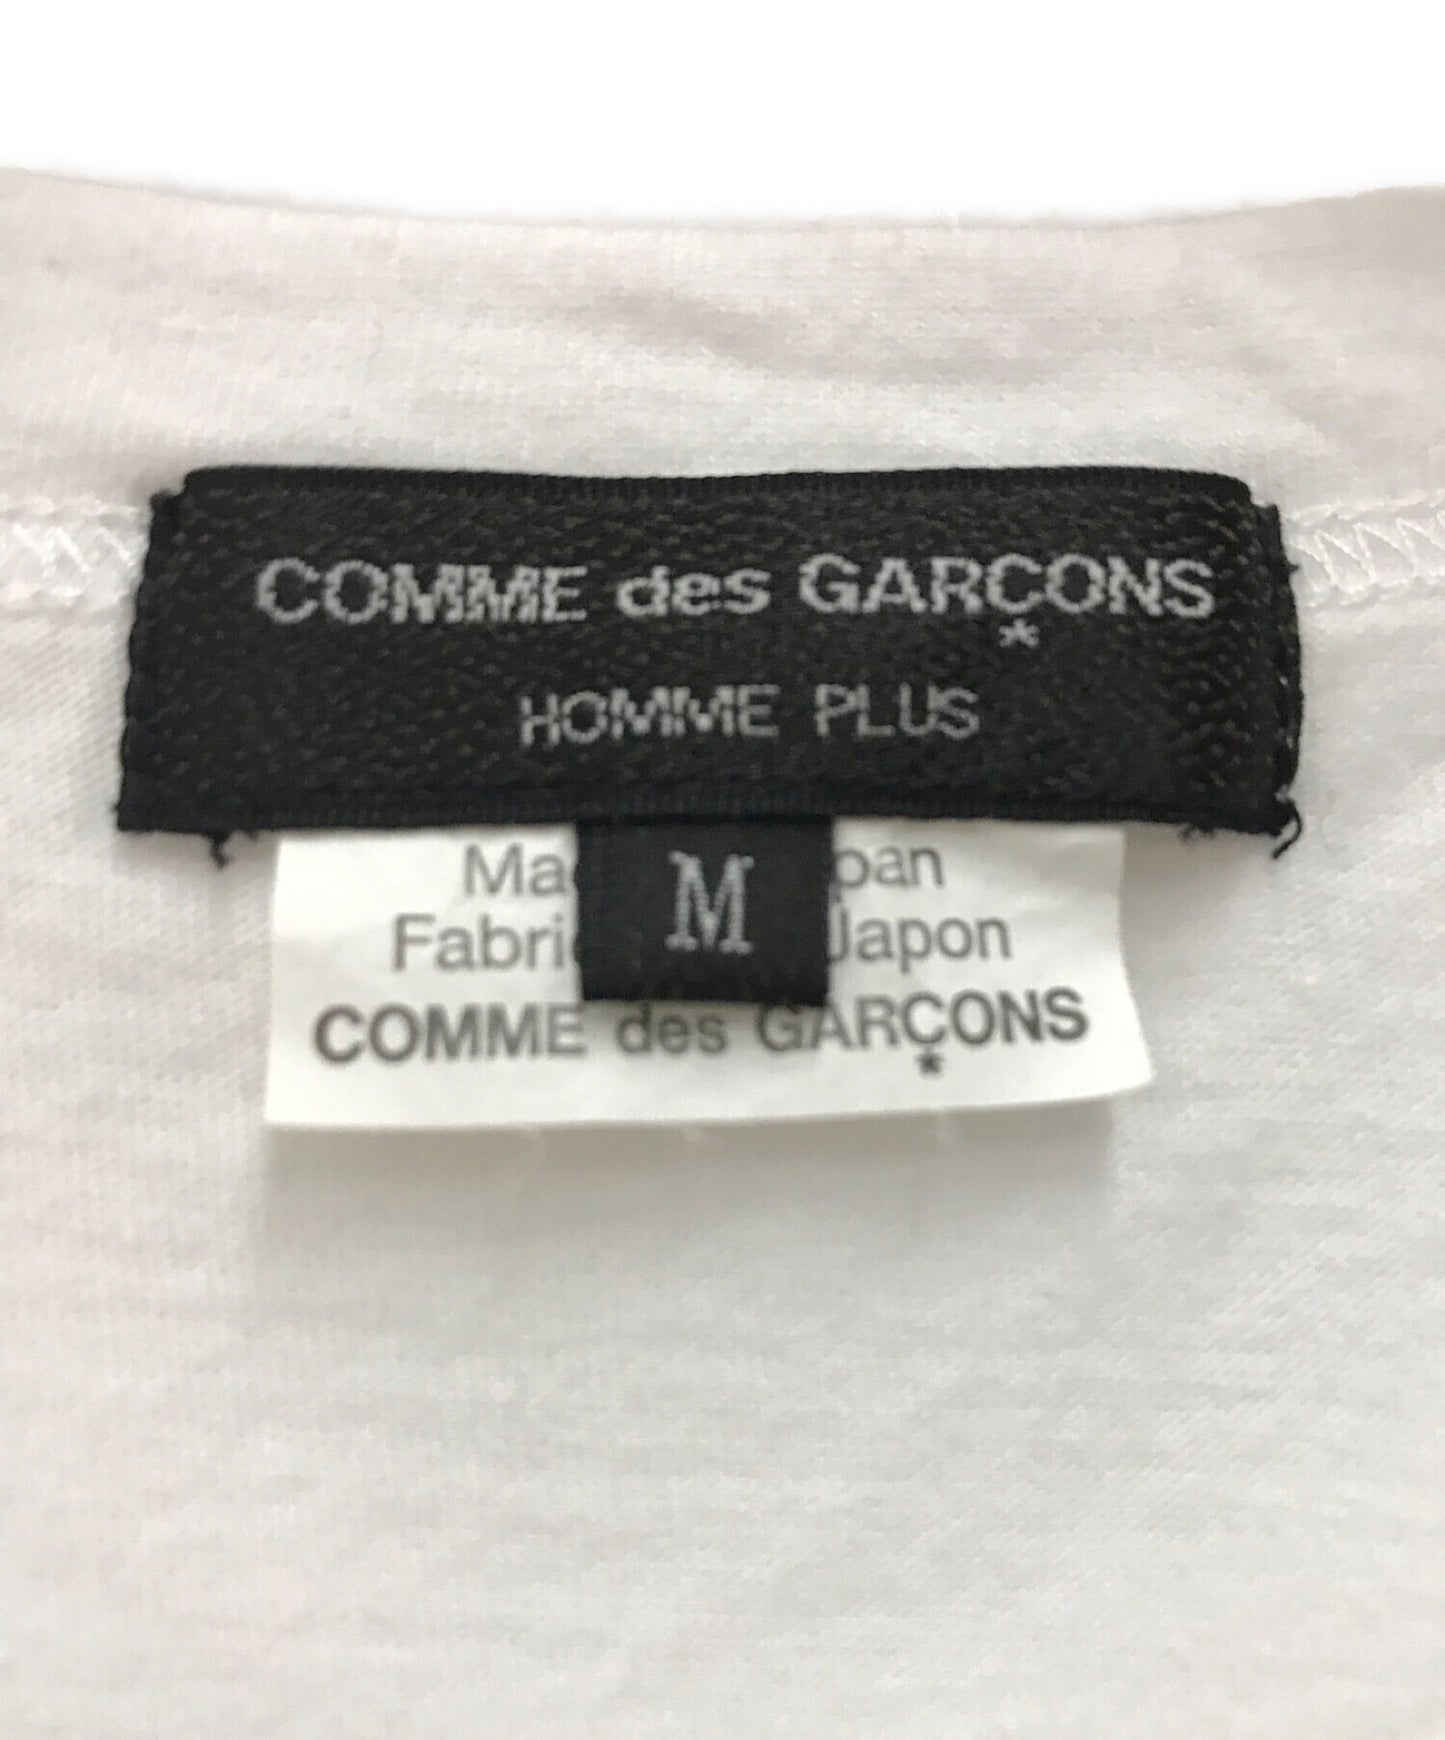 Comme des Garcons Homme Plus Mona Luison印刷S / S T恤 / Mona Luison印刷棉T恤